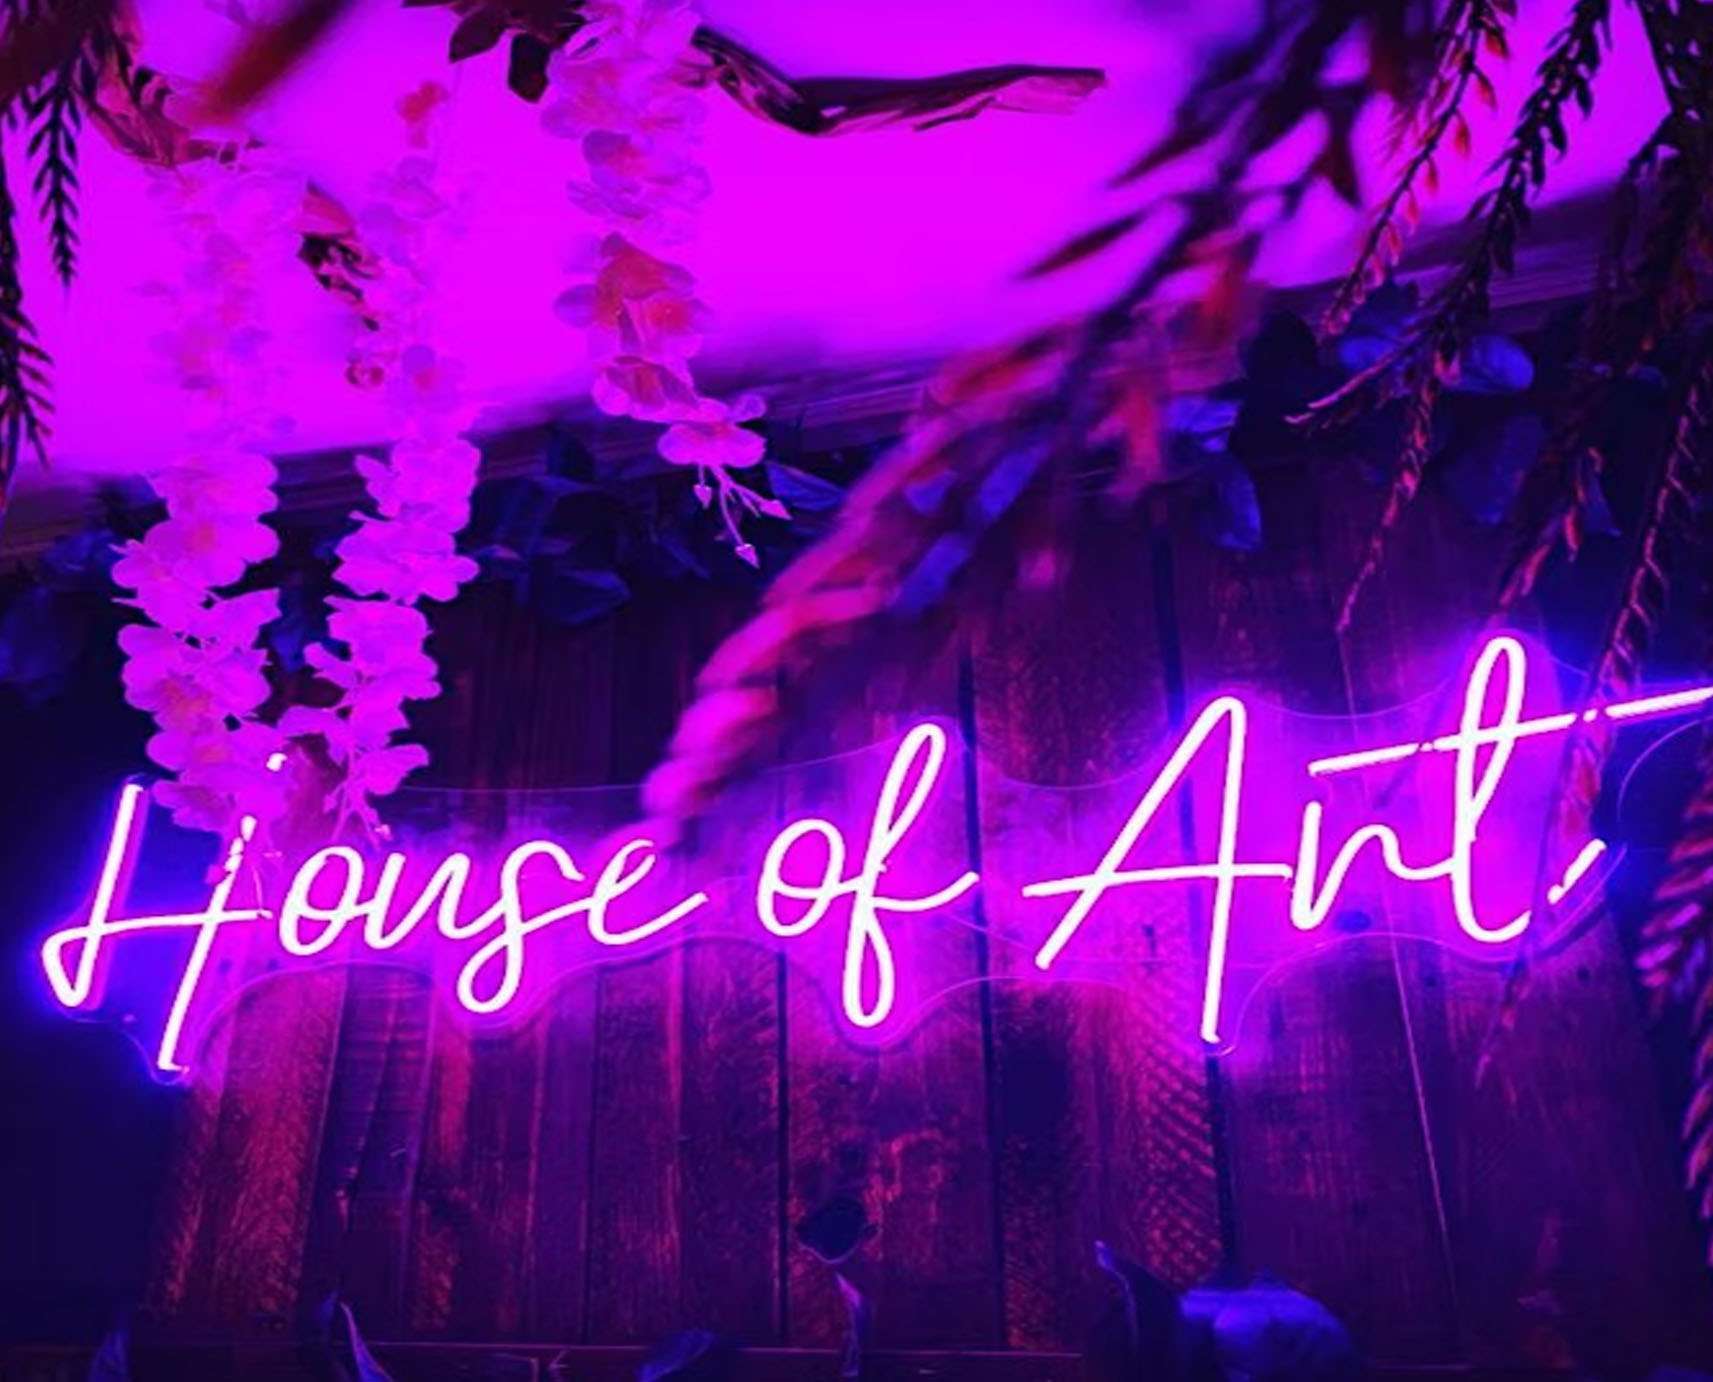 House of Art Pop-Up Bar